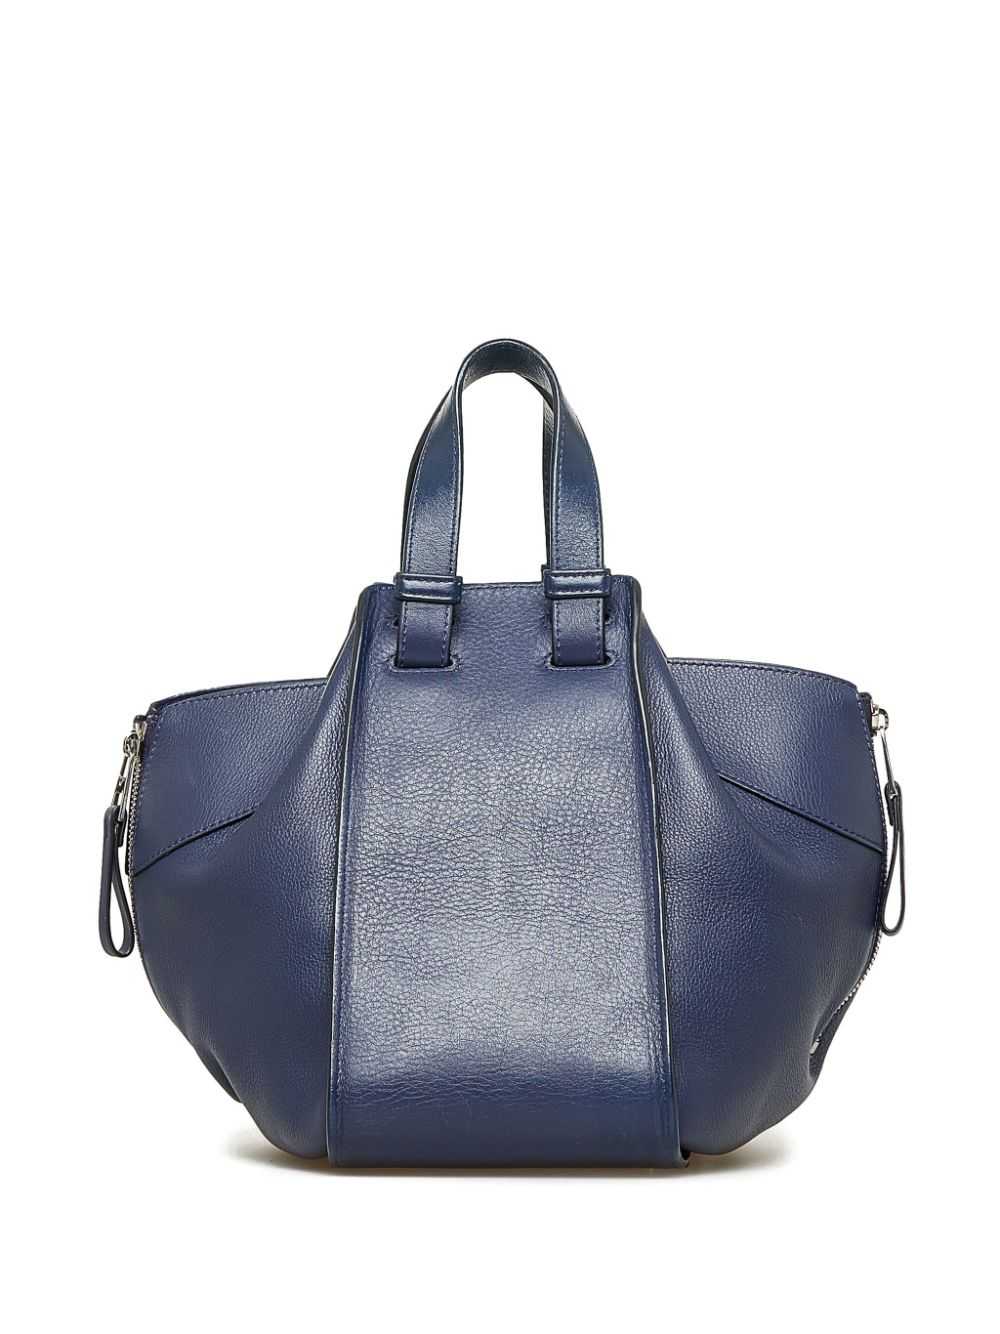 Loewe Pre-Owned 2016 Hammock satchel - Blue - image 2